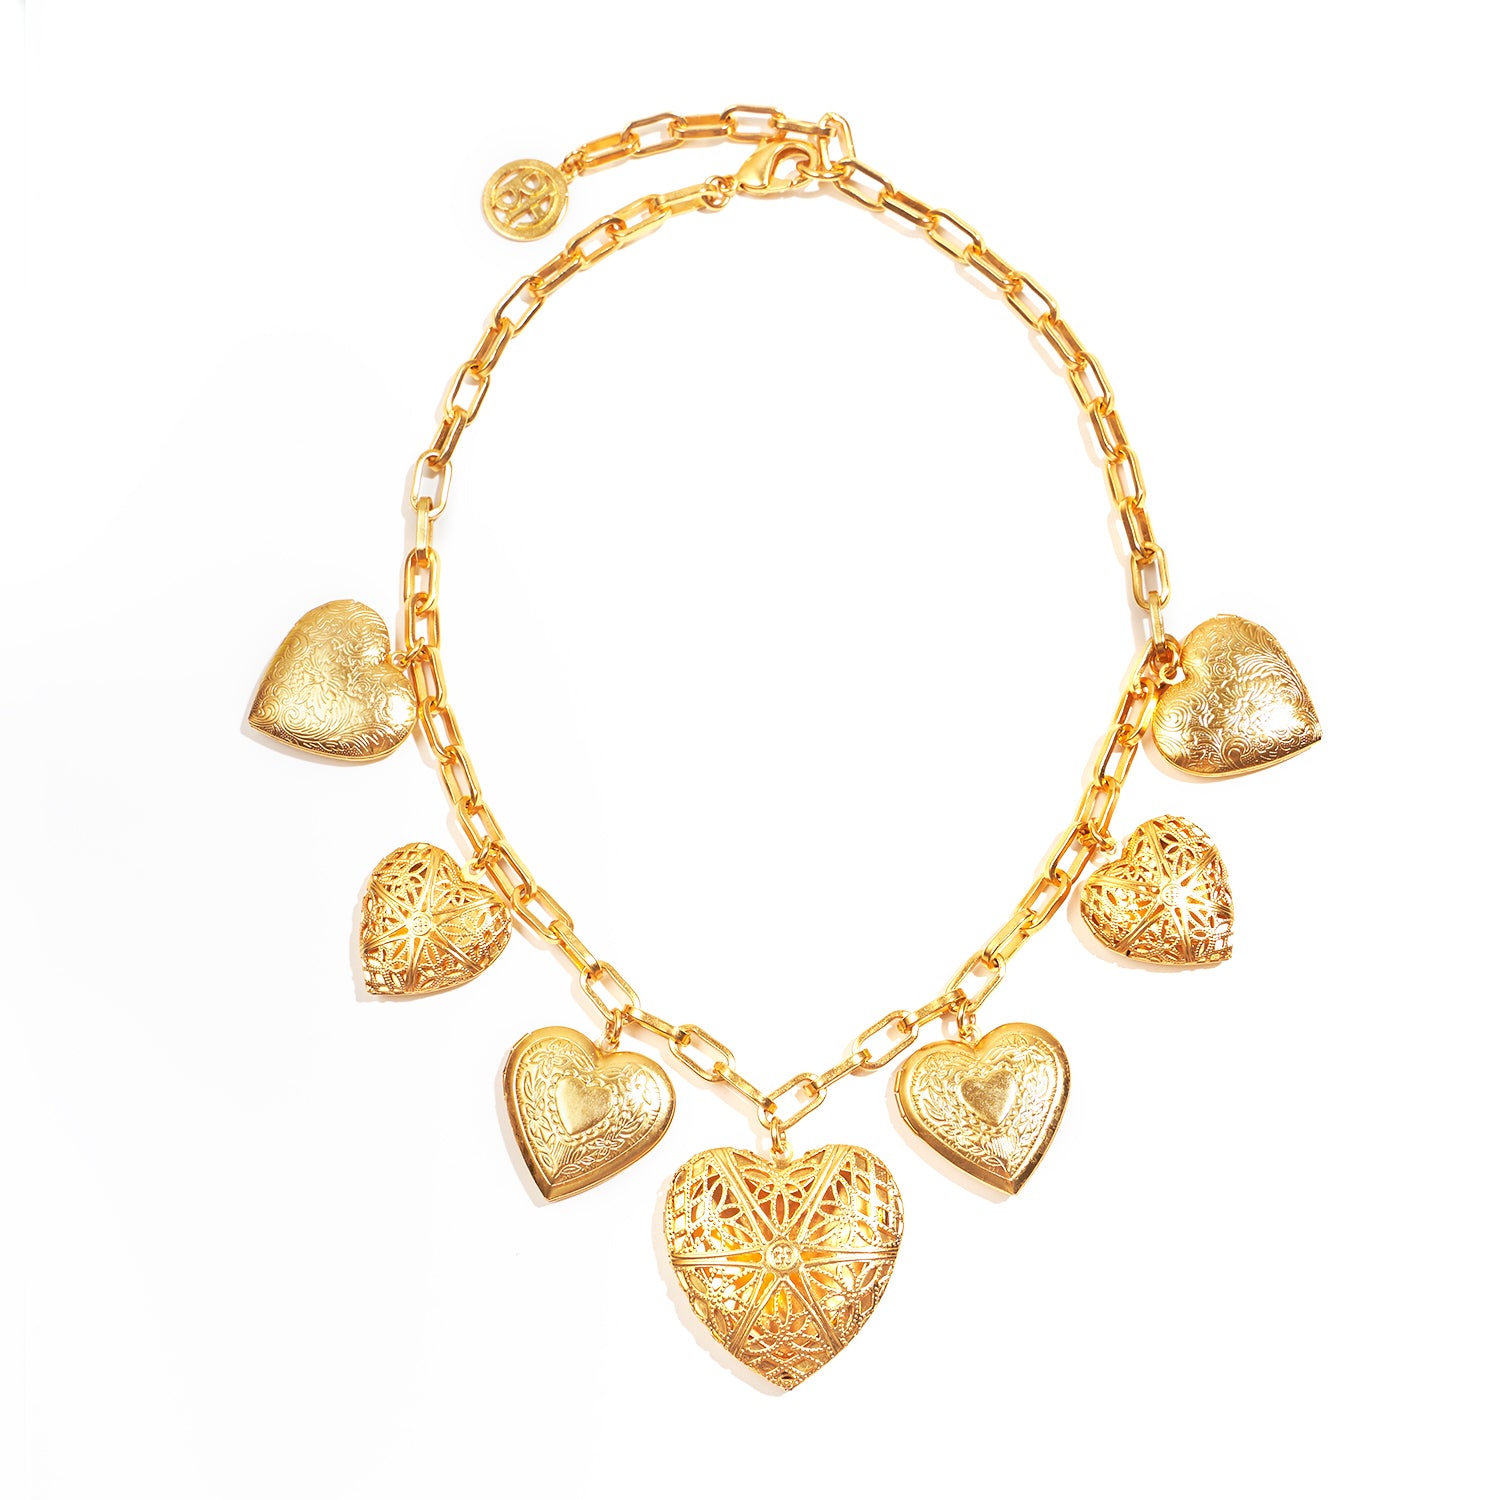 Heart Lock Pendants, Charm Bracelet, Jewelry